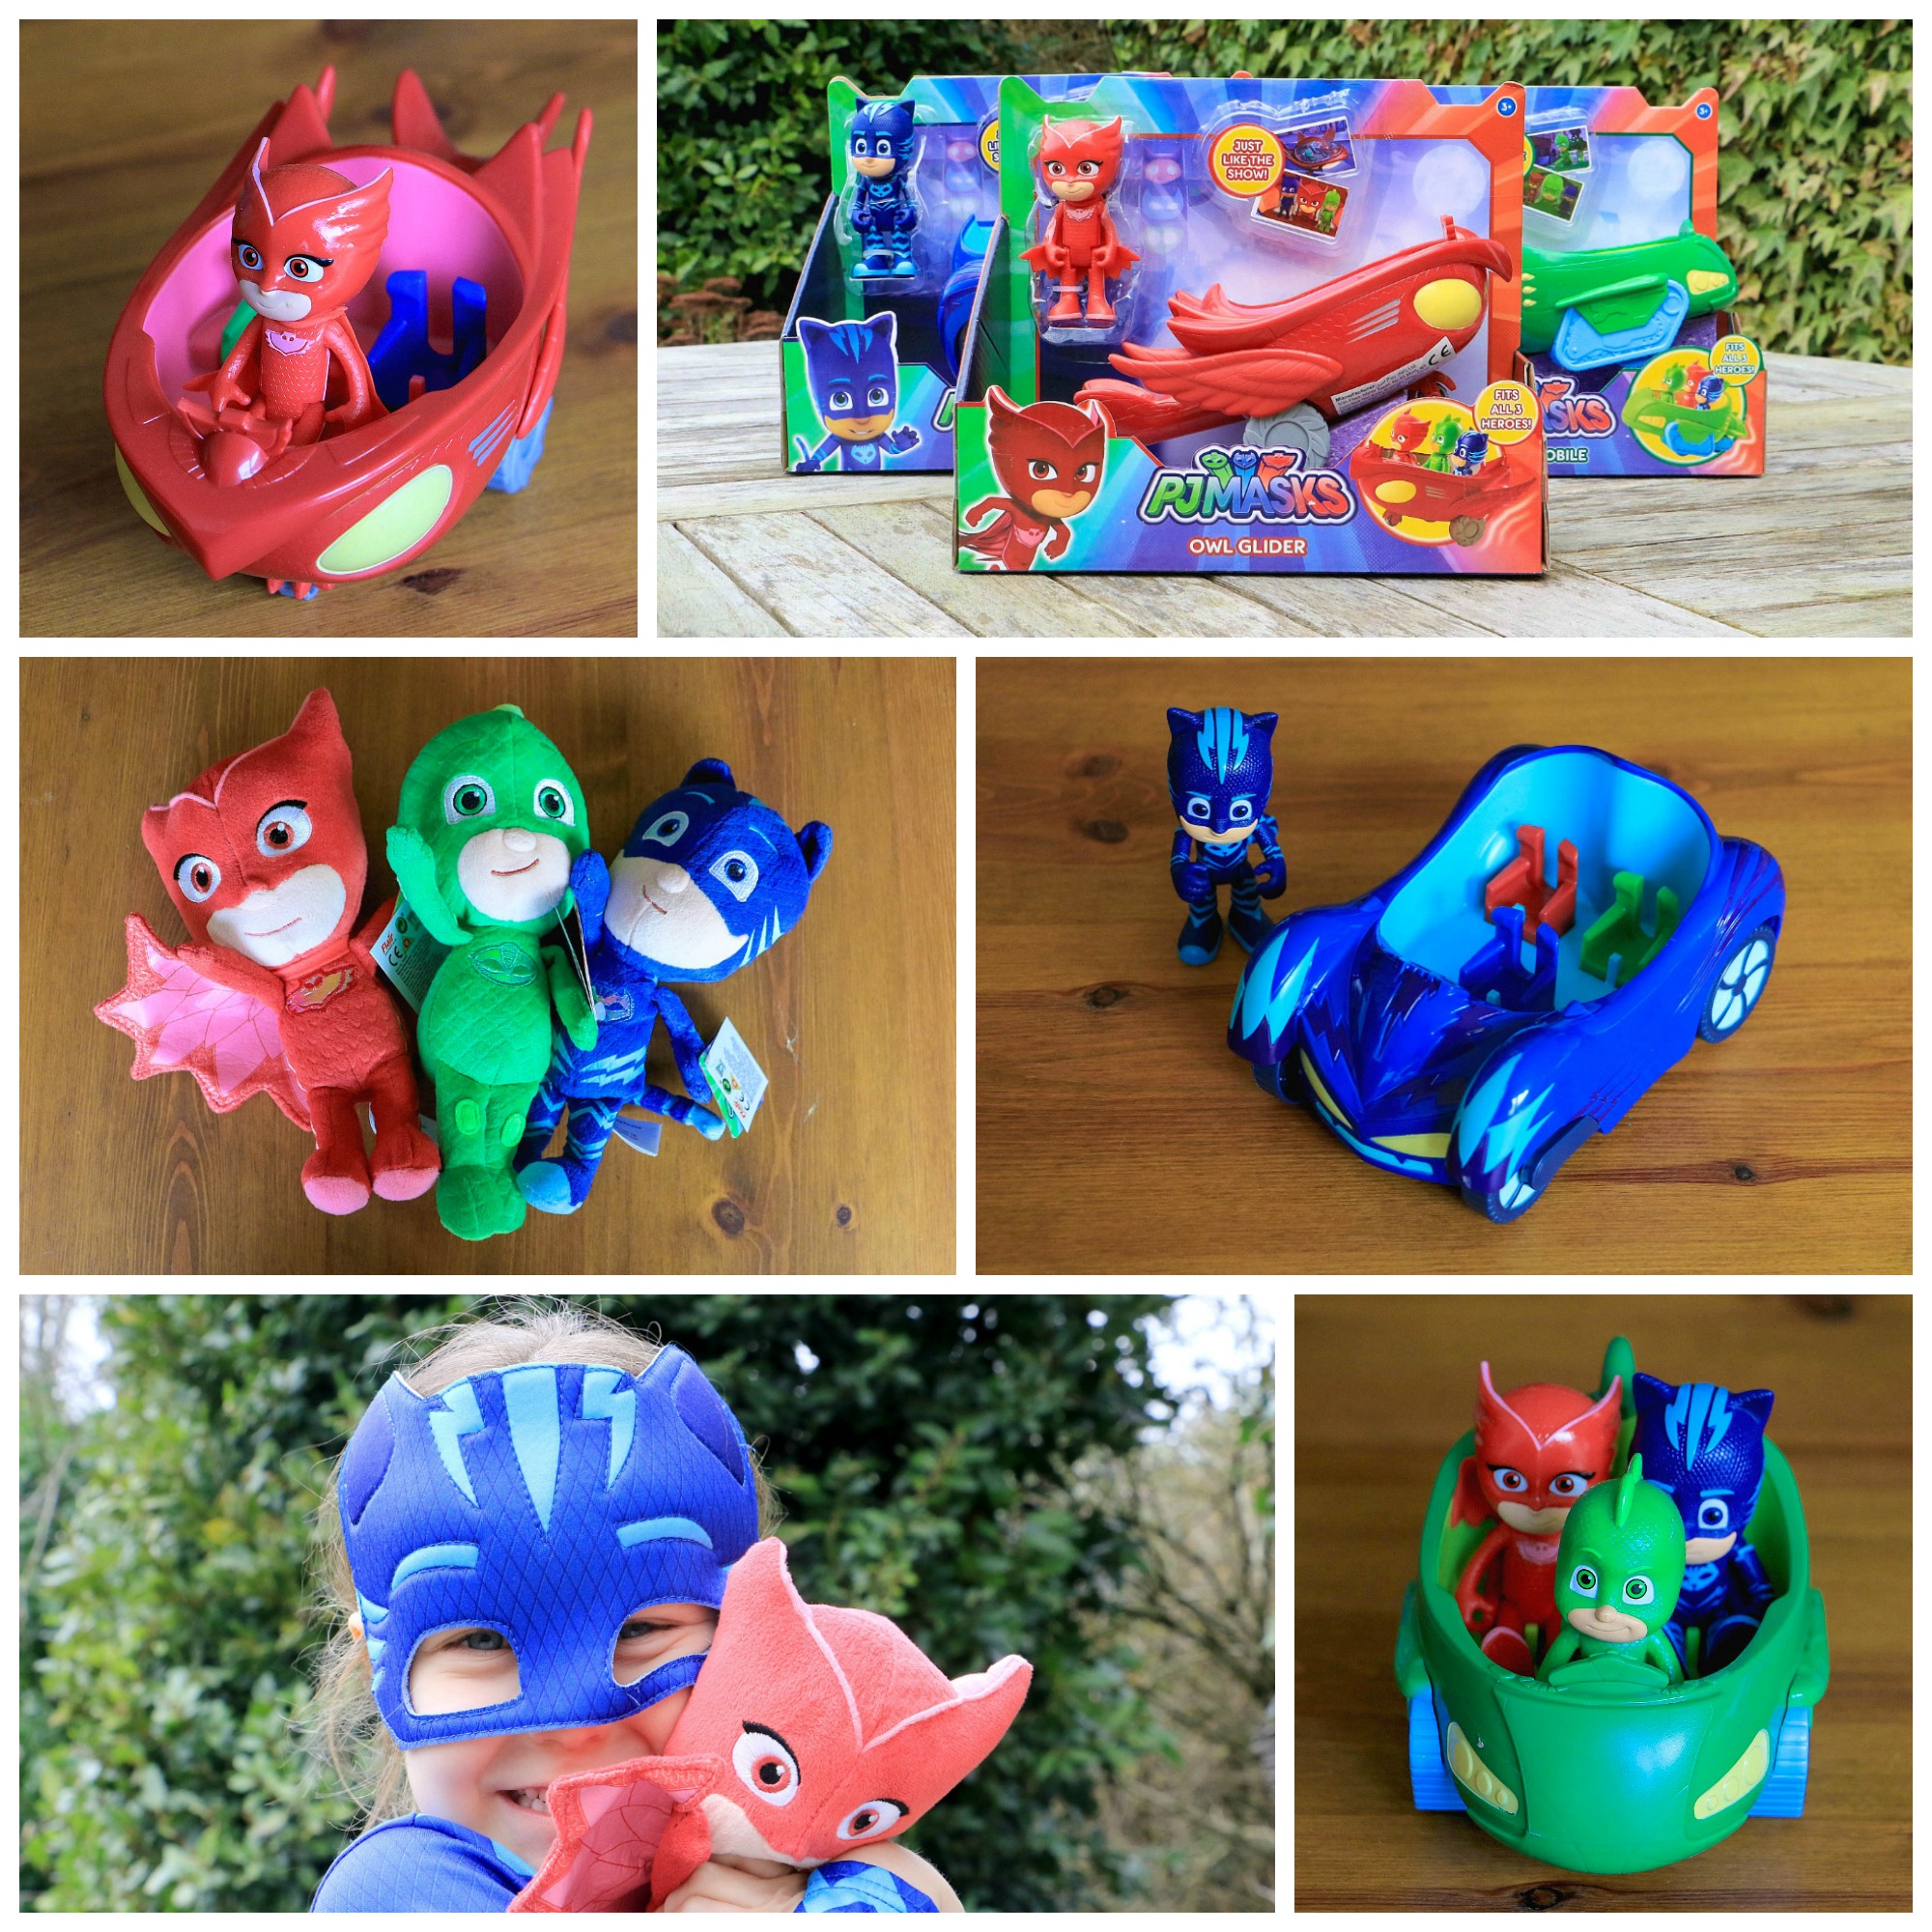 PJ-Masks-Toys-collage-